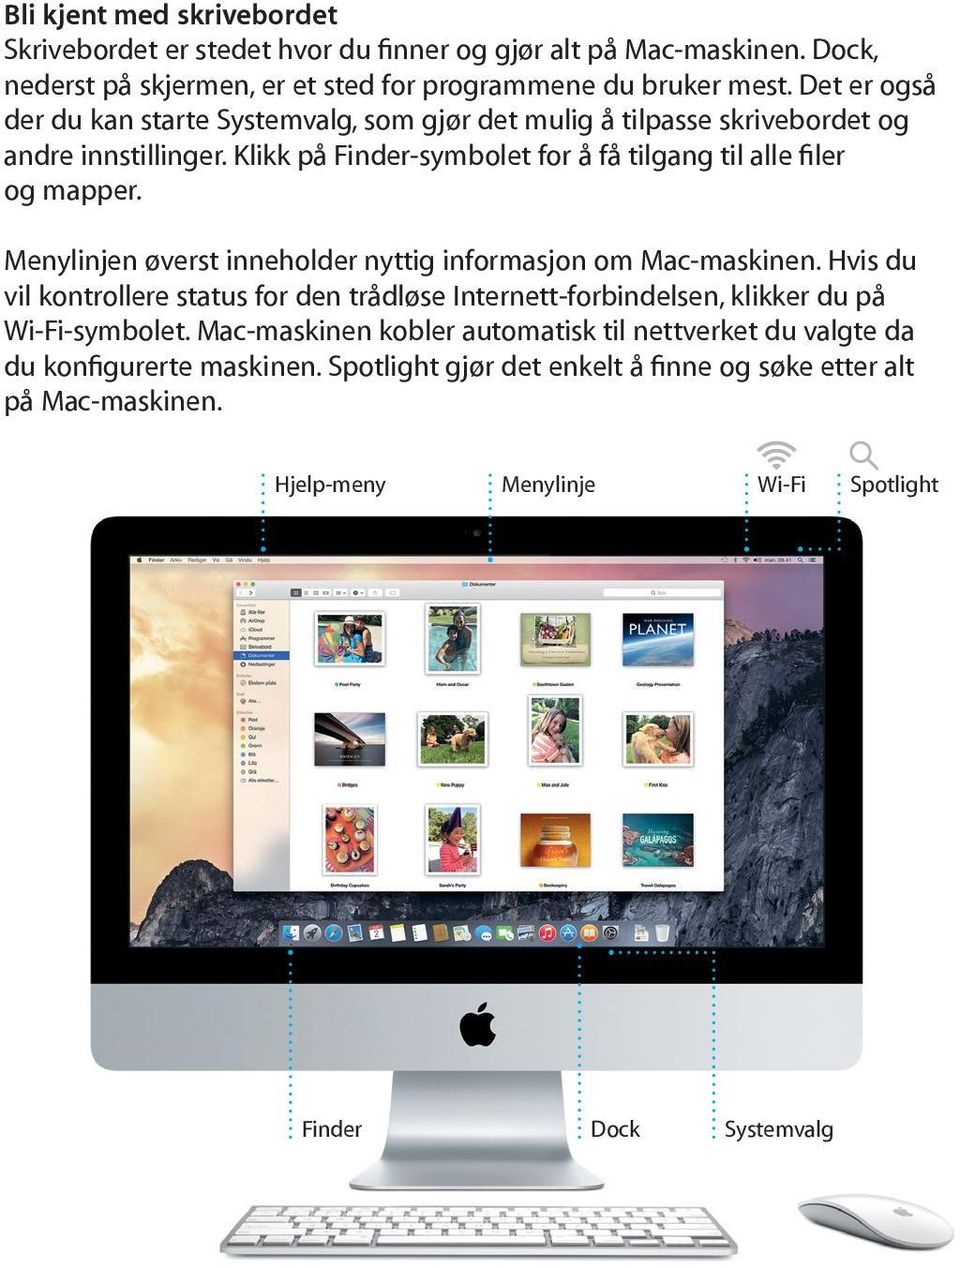 Menylinjen øverst inneholder nyttig informasjon om Mac-maskinen. Hvis du vil kontrollere status for den trådløse Internett-forbindelsen, klikker du på Wi-Fi-symbolet.